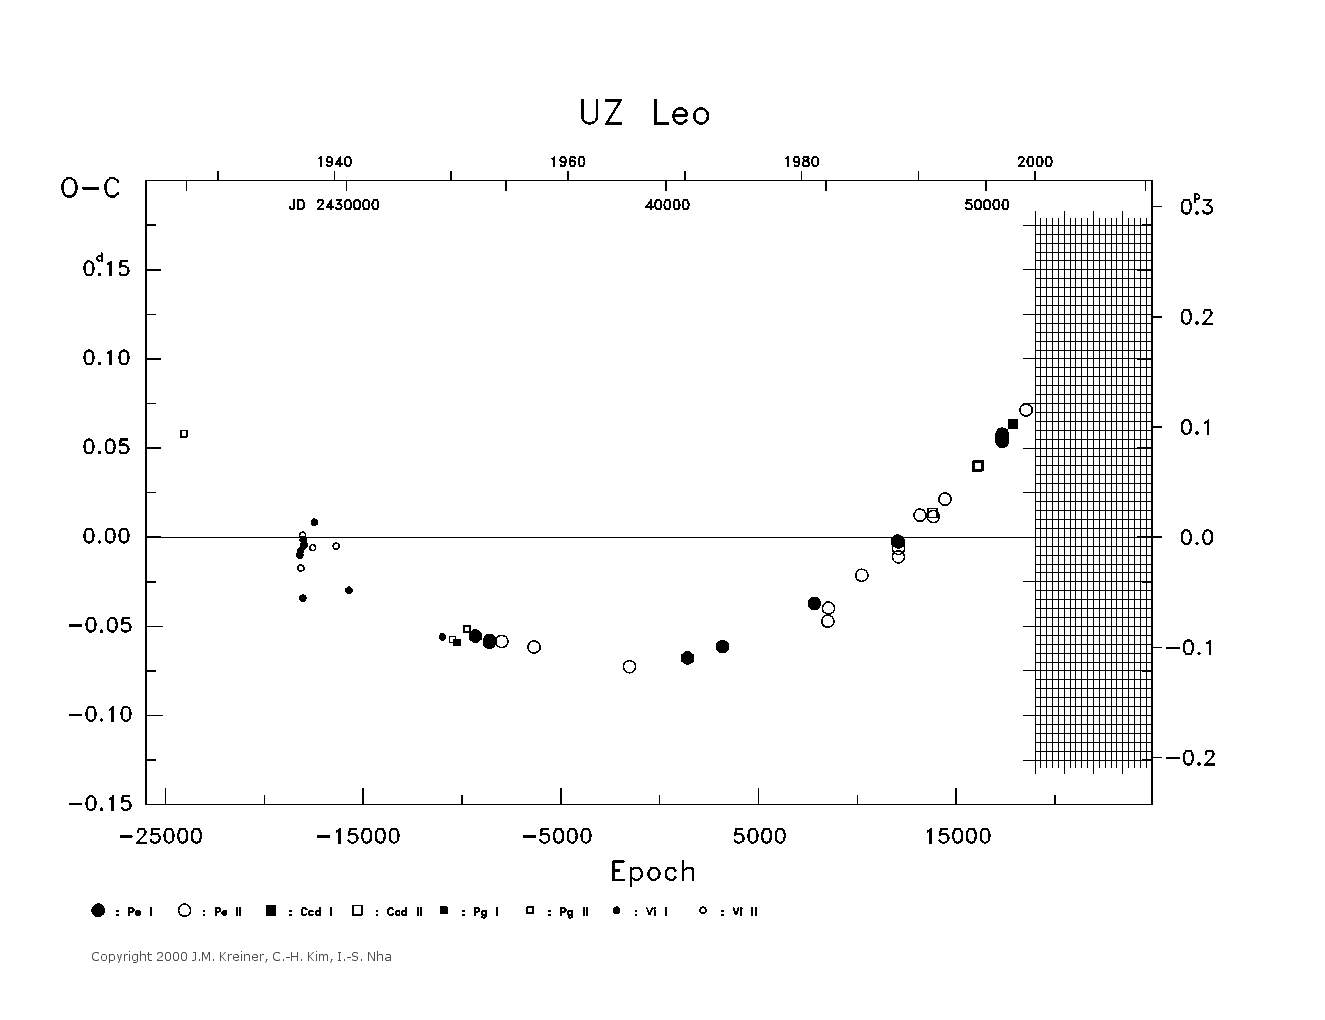 [IMAGE: large UZ LEO O-C diagram]